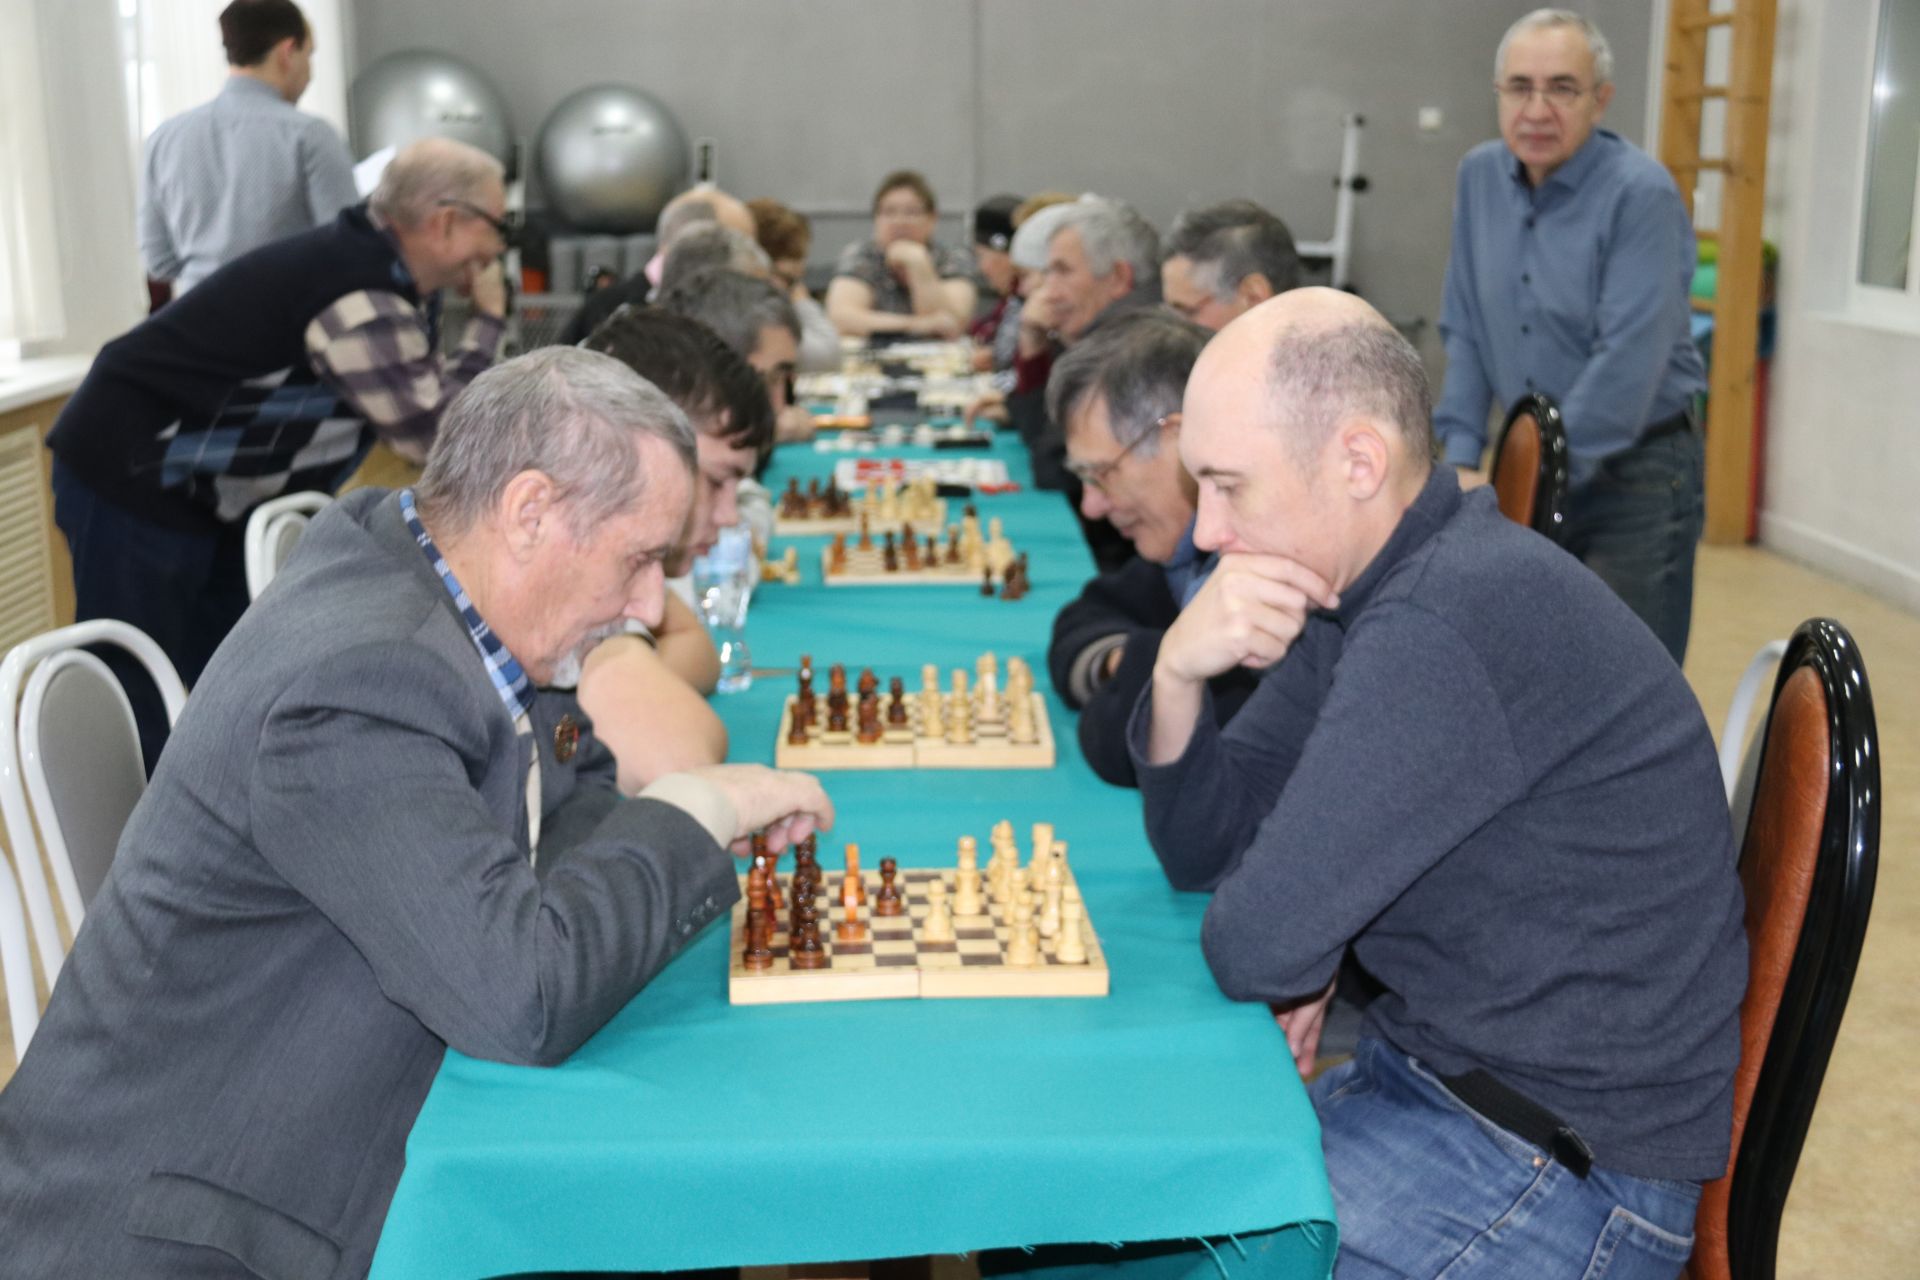 Ютазинские пенсионеры за шахматным столом